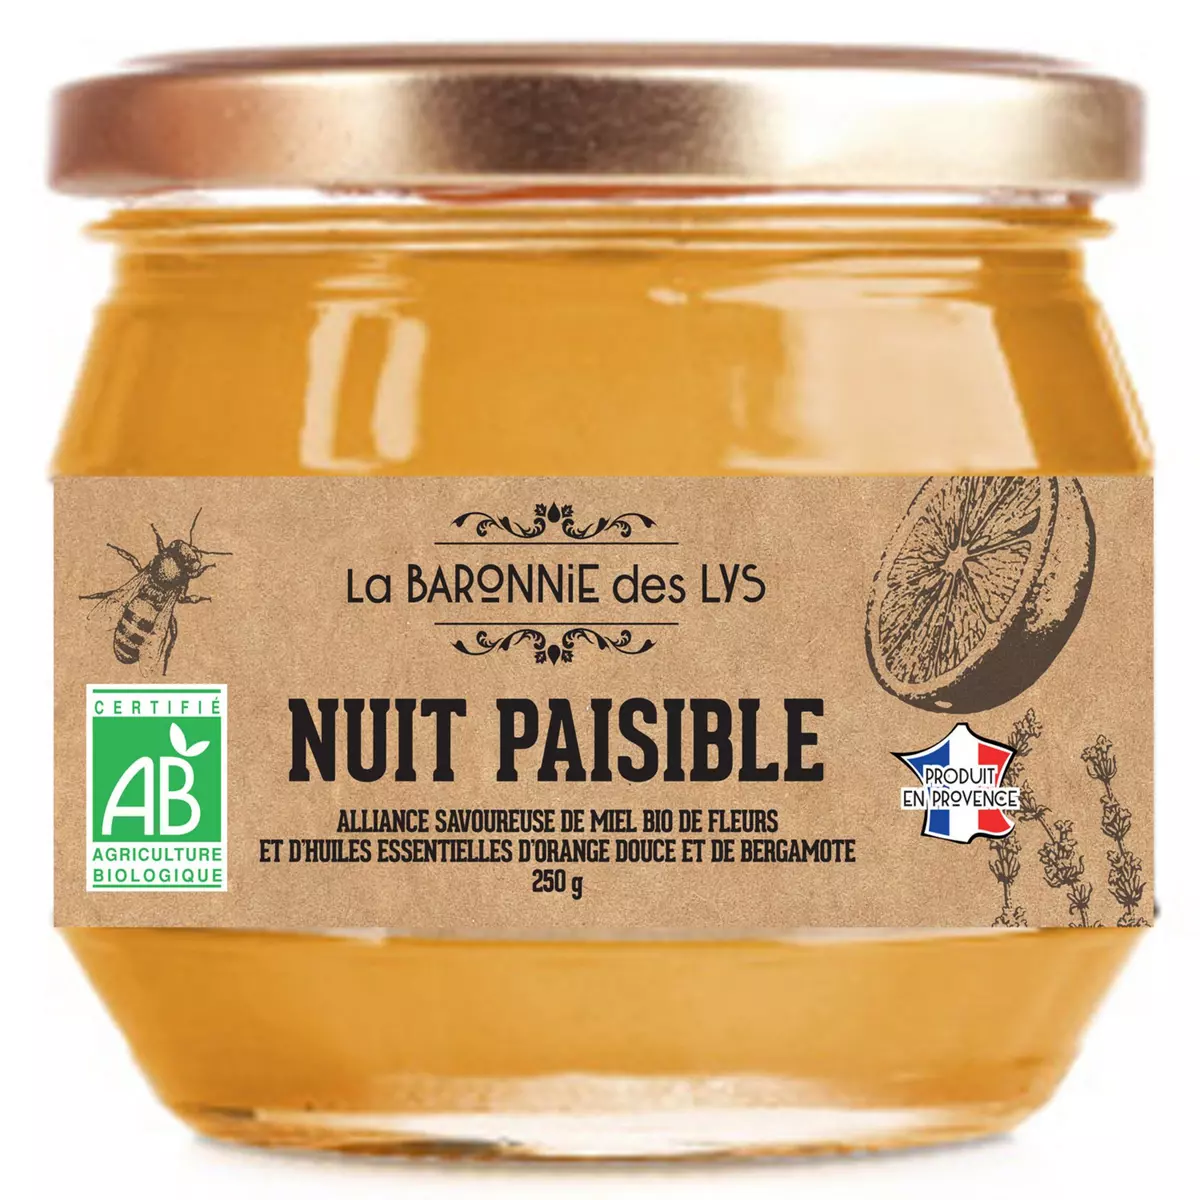 LA BARONIE DES LYS Nuit paisible Mélange de miel bio de fleurs et huiles essentielles d'orange douce et de bergamote 250g